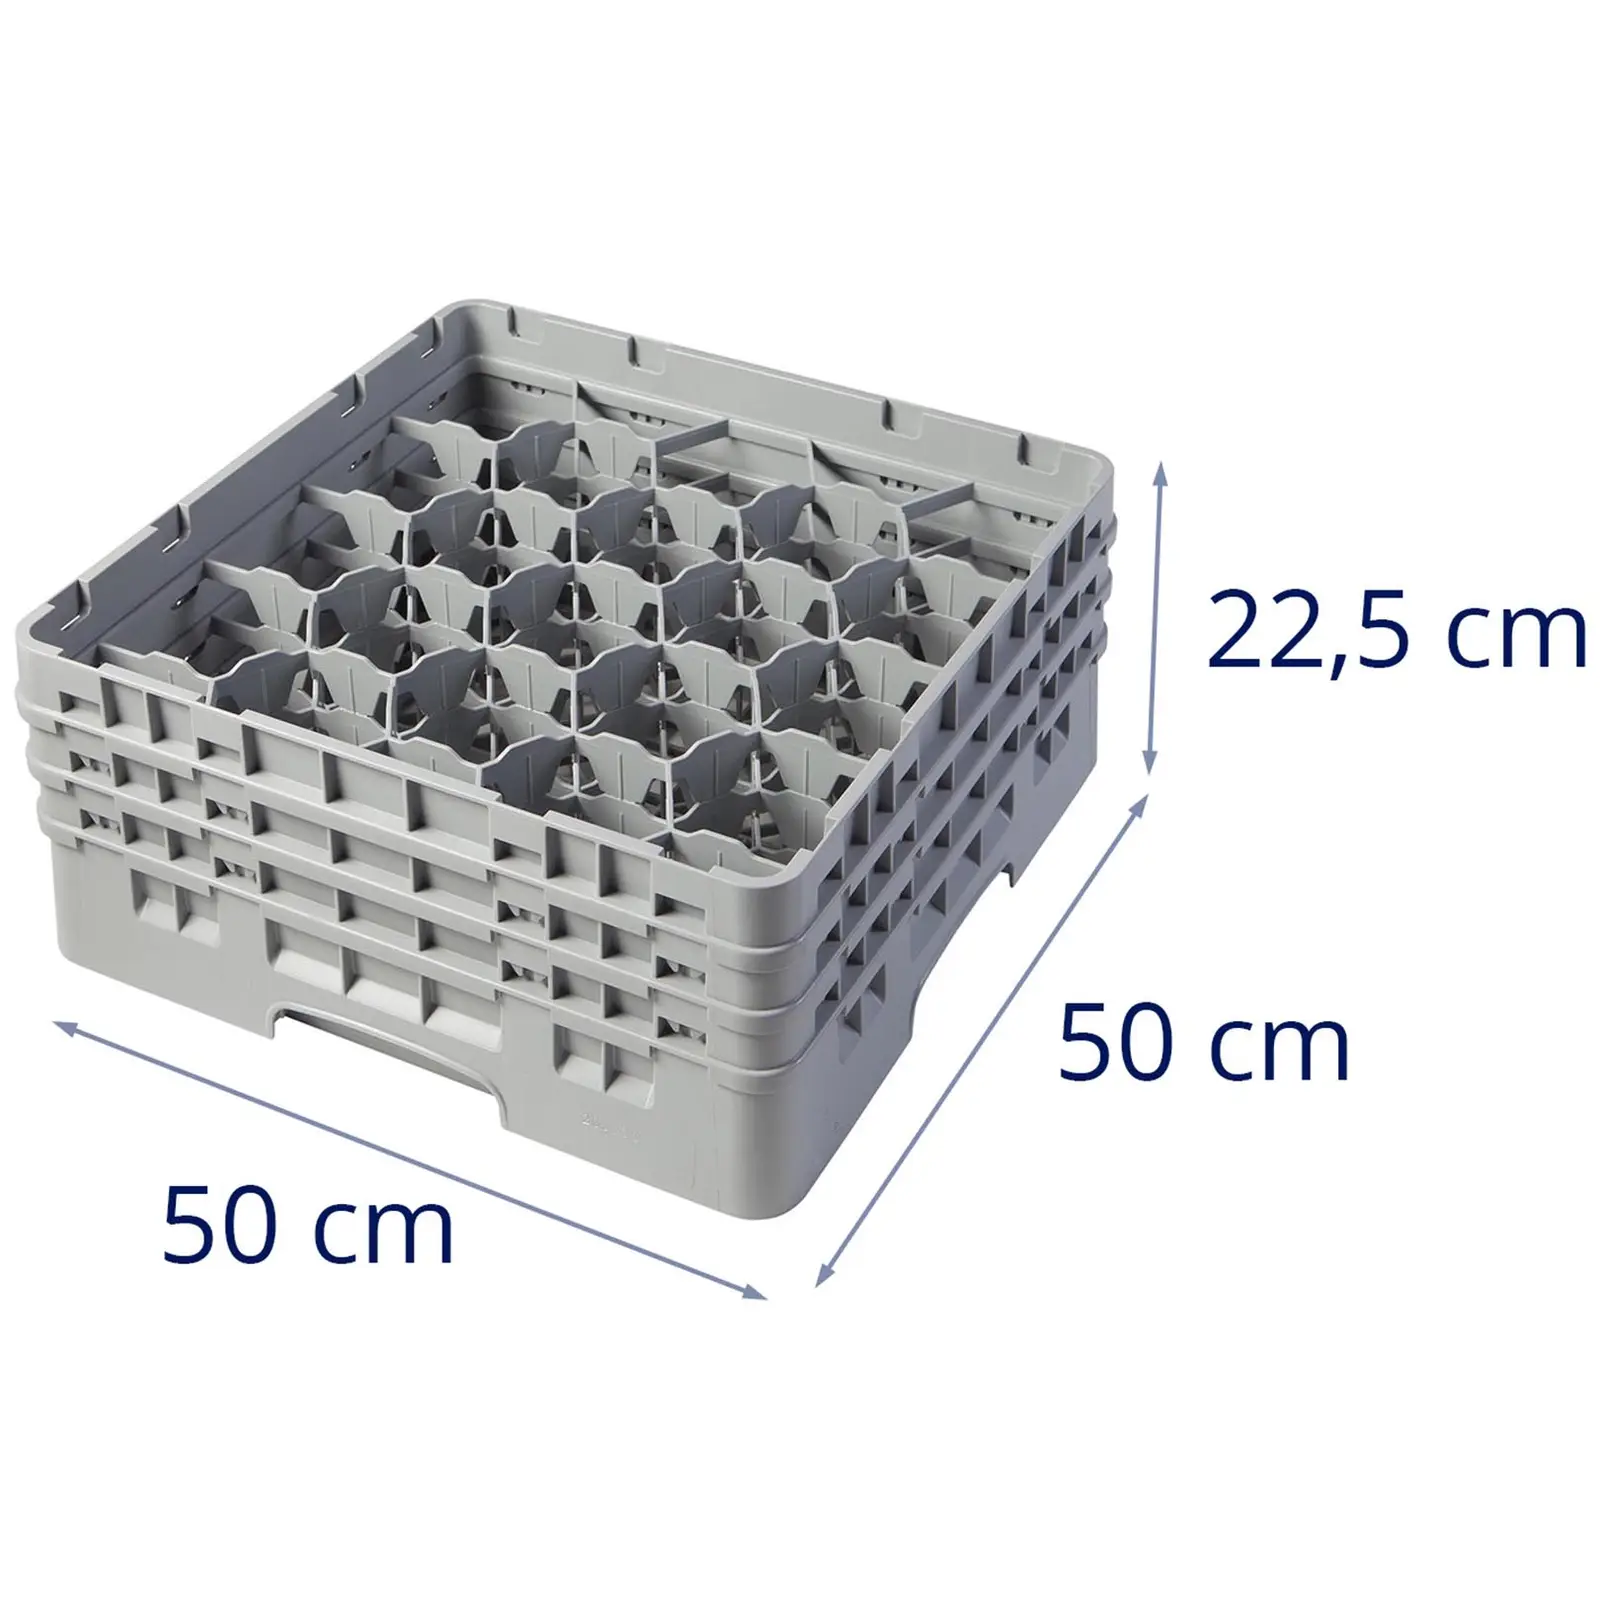 Opvaskekurv til glas til industriopvaskemaskine - 20 rum - 50 x 50 x 22,5 cm - glashøjde: 17,4 cm